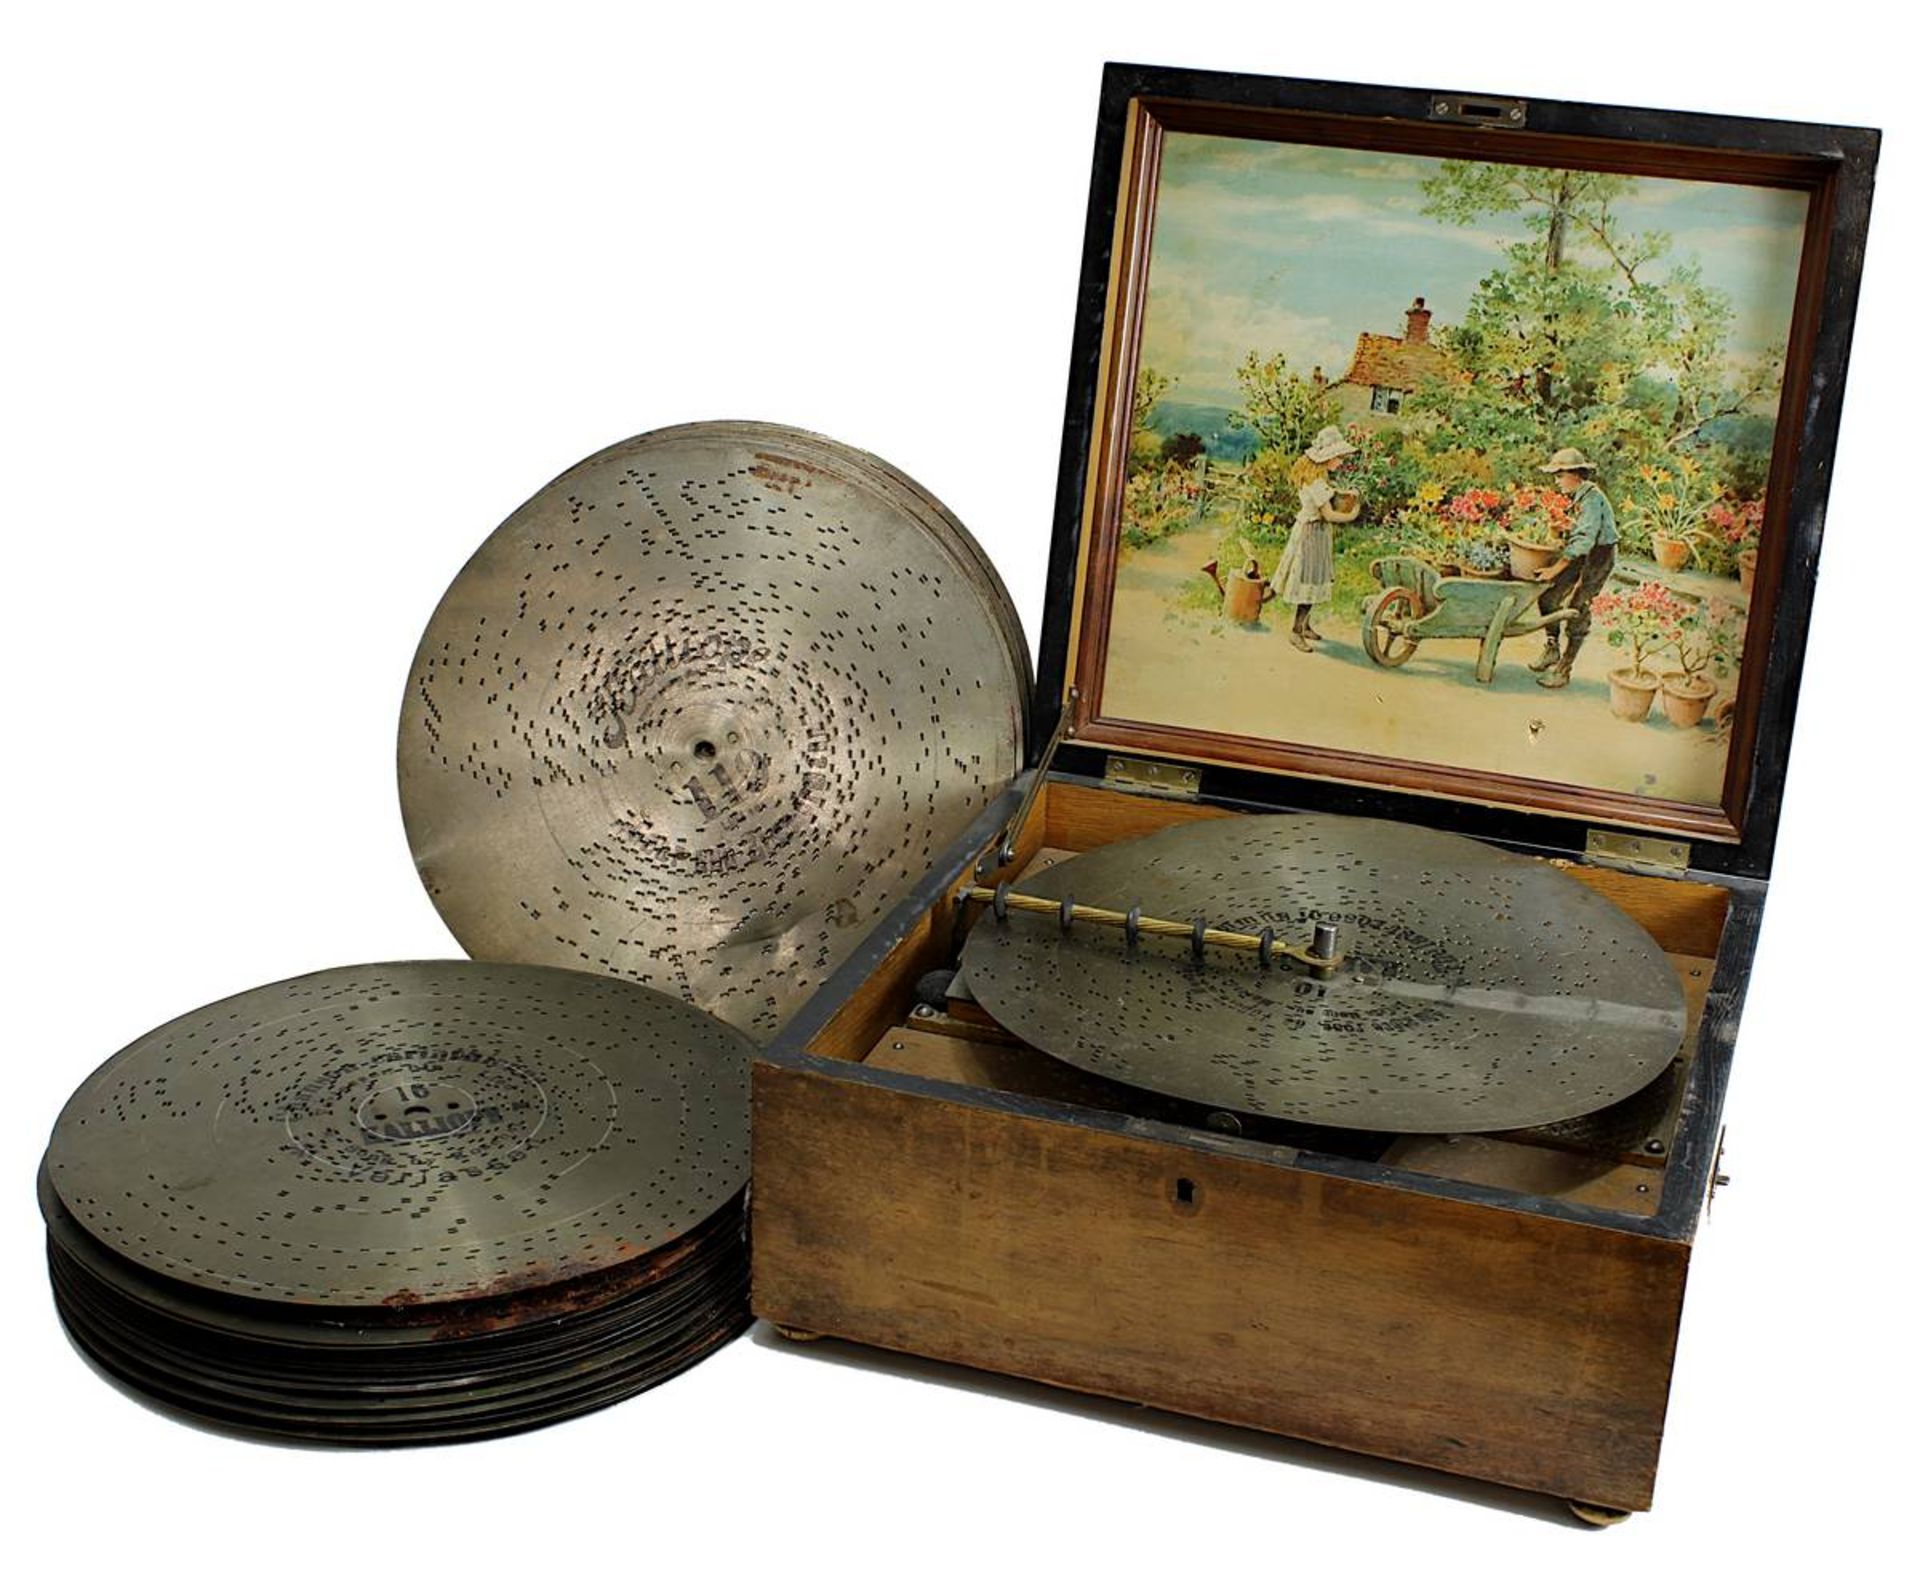 Kalliope Lochplattenspieler mit ca. 40 Platten, deutsch um 1890, auf Deckel beschriftet Kalliope,